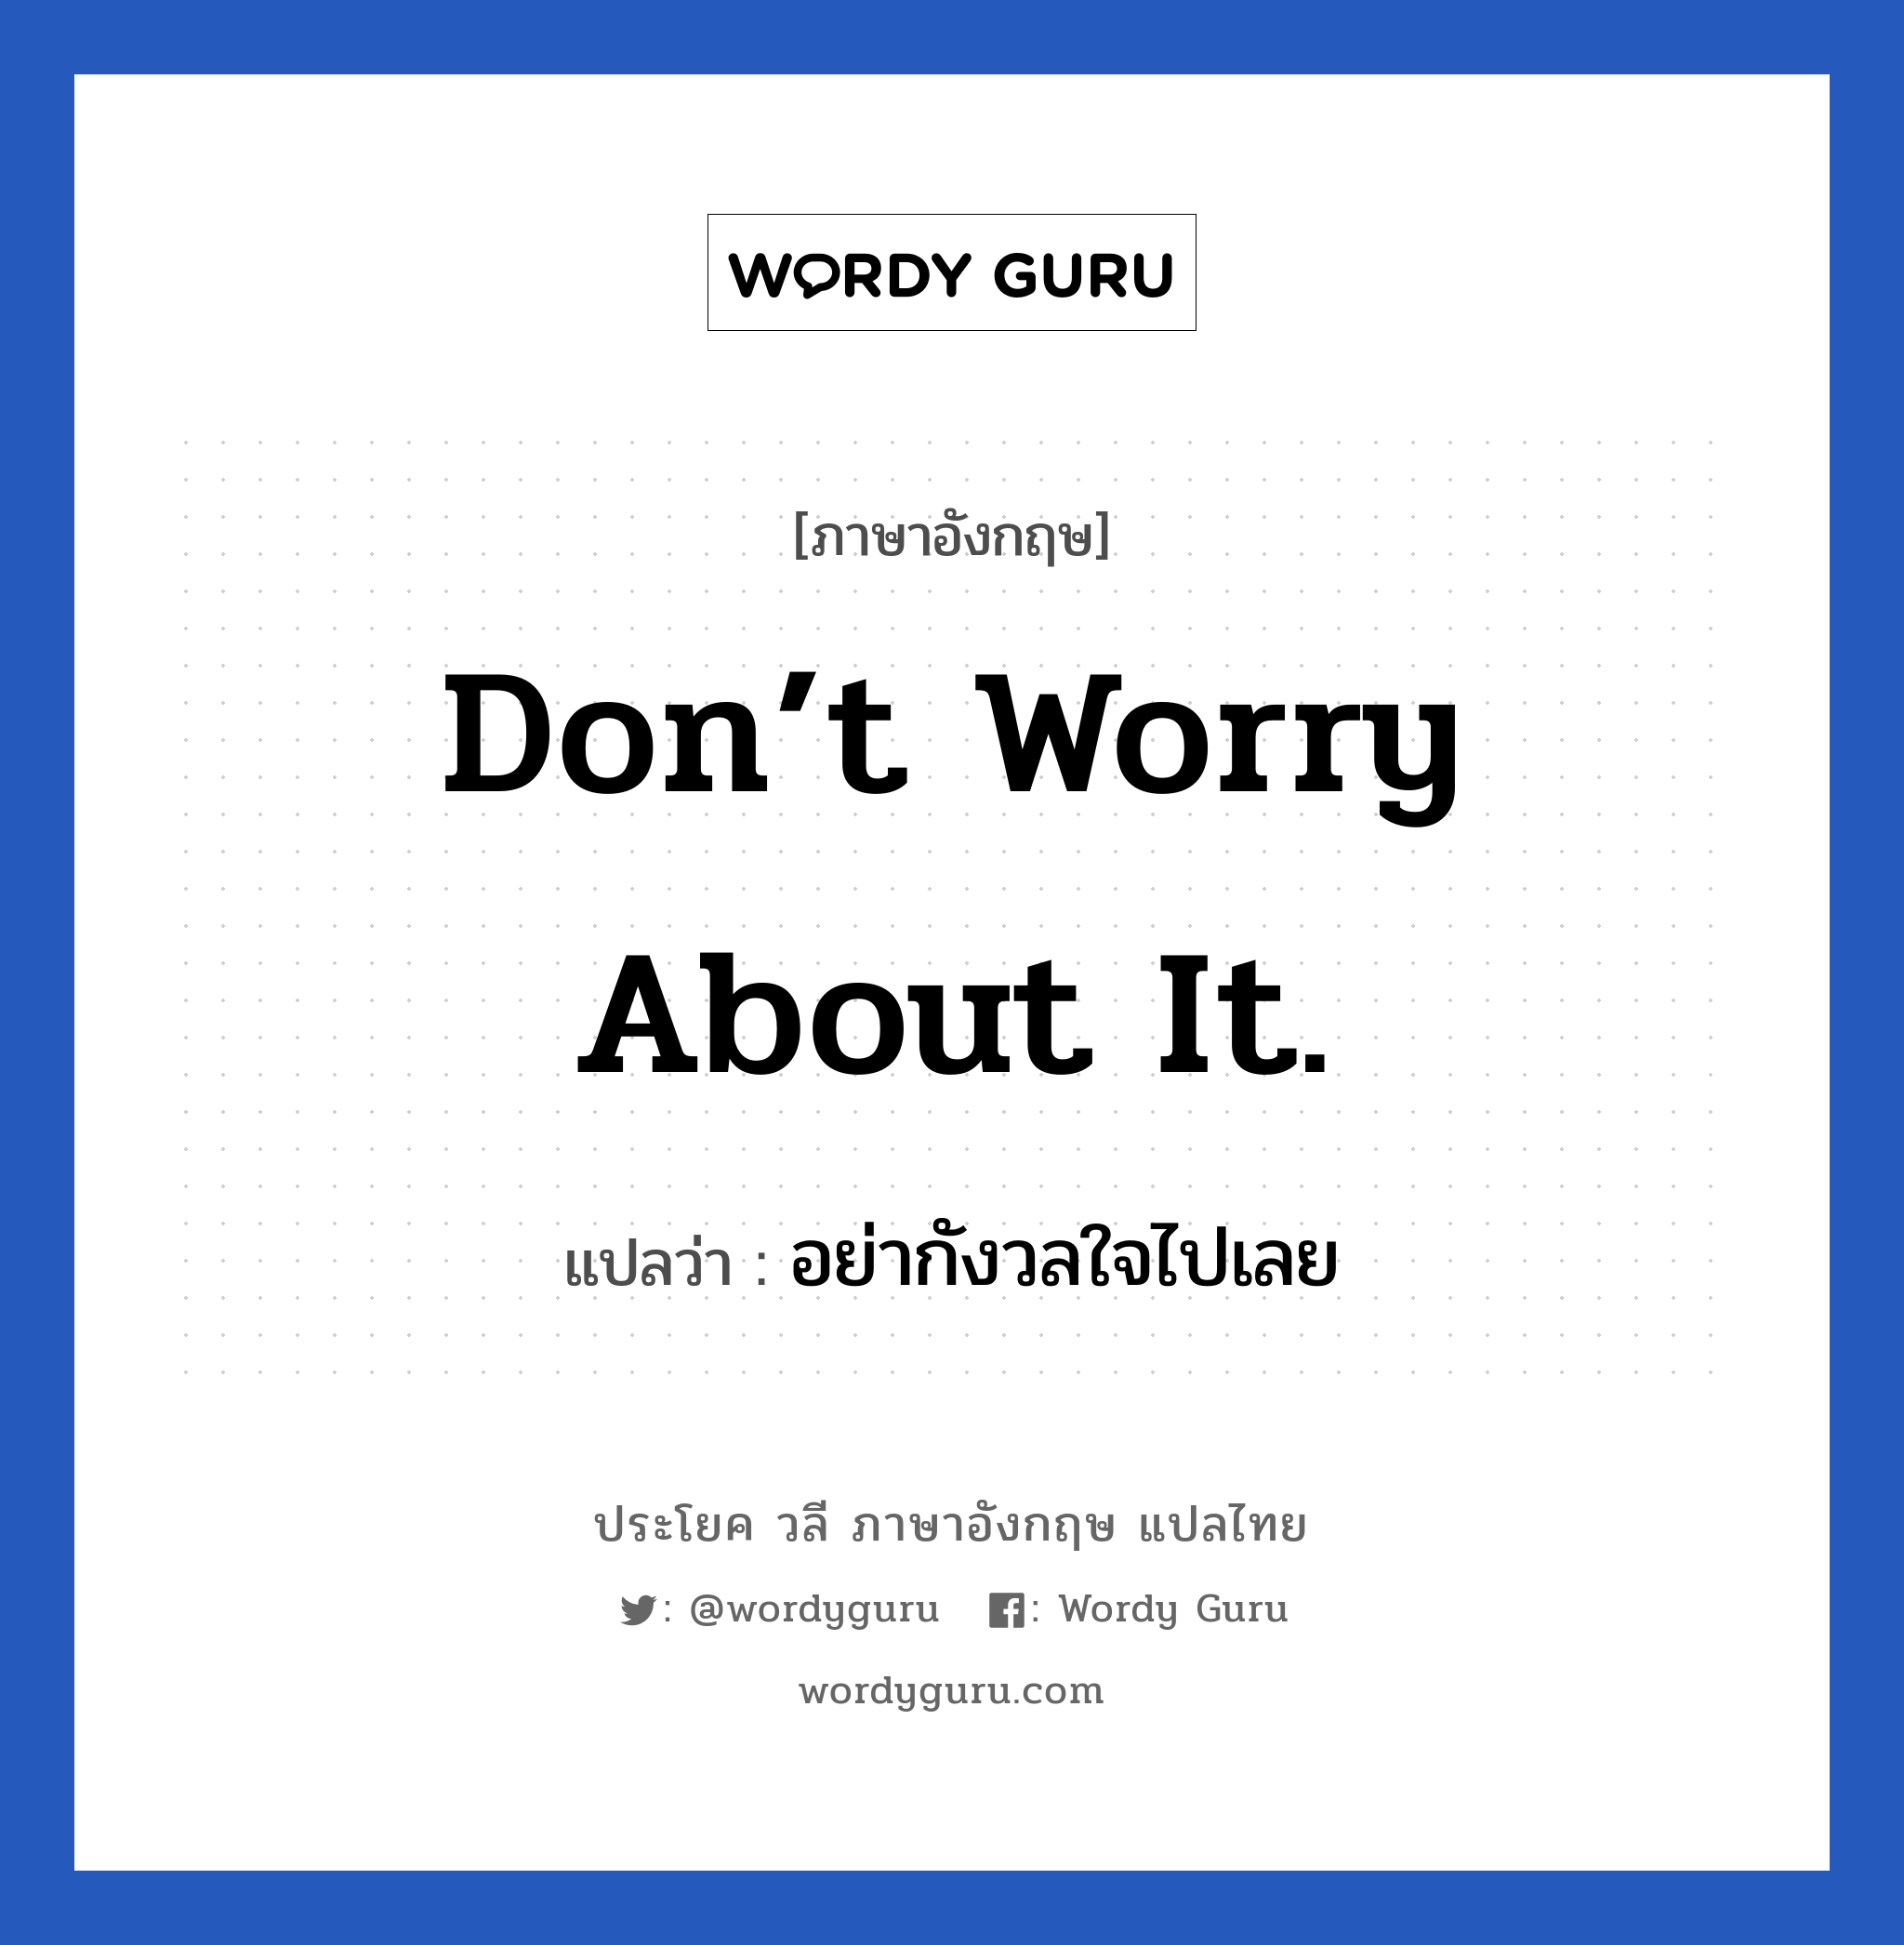 Don’t worry about it. แปลว่า? เป็นประโยคในกลุ่มประเภท ให้กำลังใจ, วลีภาษาอังกฤษ Don’t worry about it. แปลว่า อย่ากังวลใจไปเลย หมวด ให้กำลังใจ